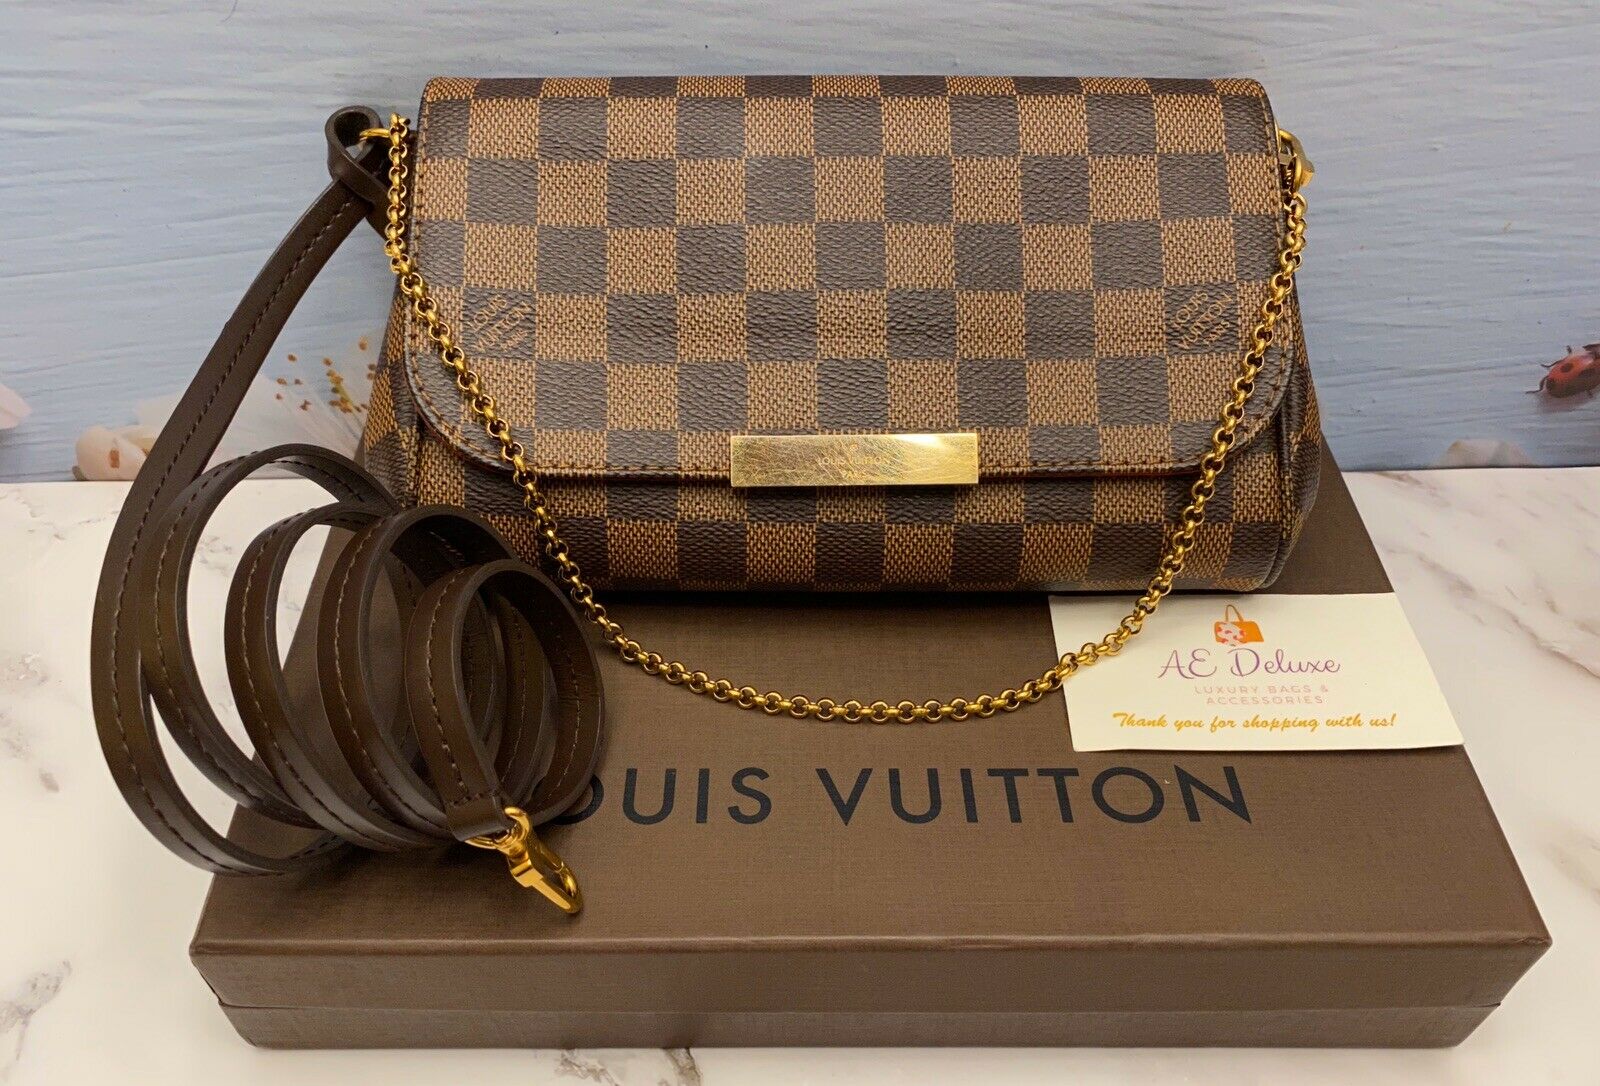 Authentic Louis Vuitton Damier Favorite PM 2Way Shoulder Bag